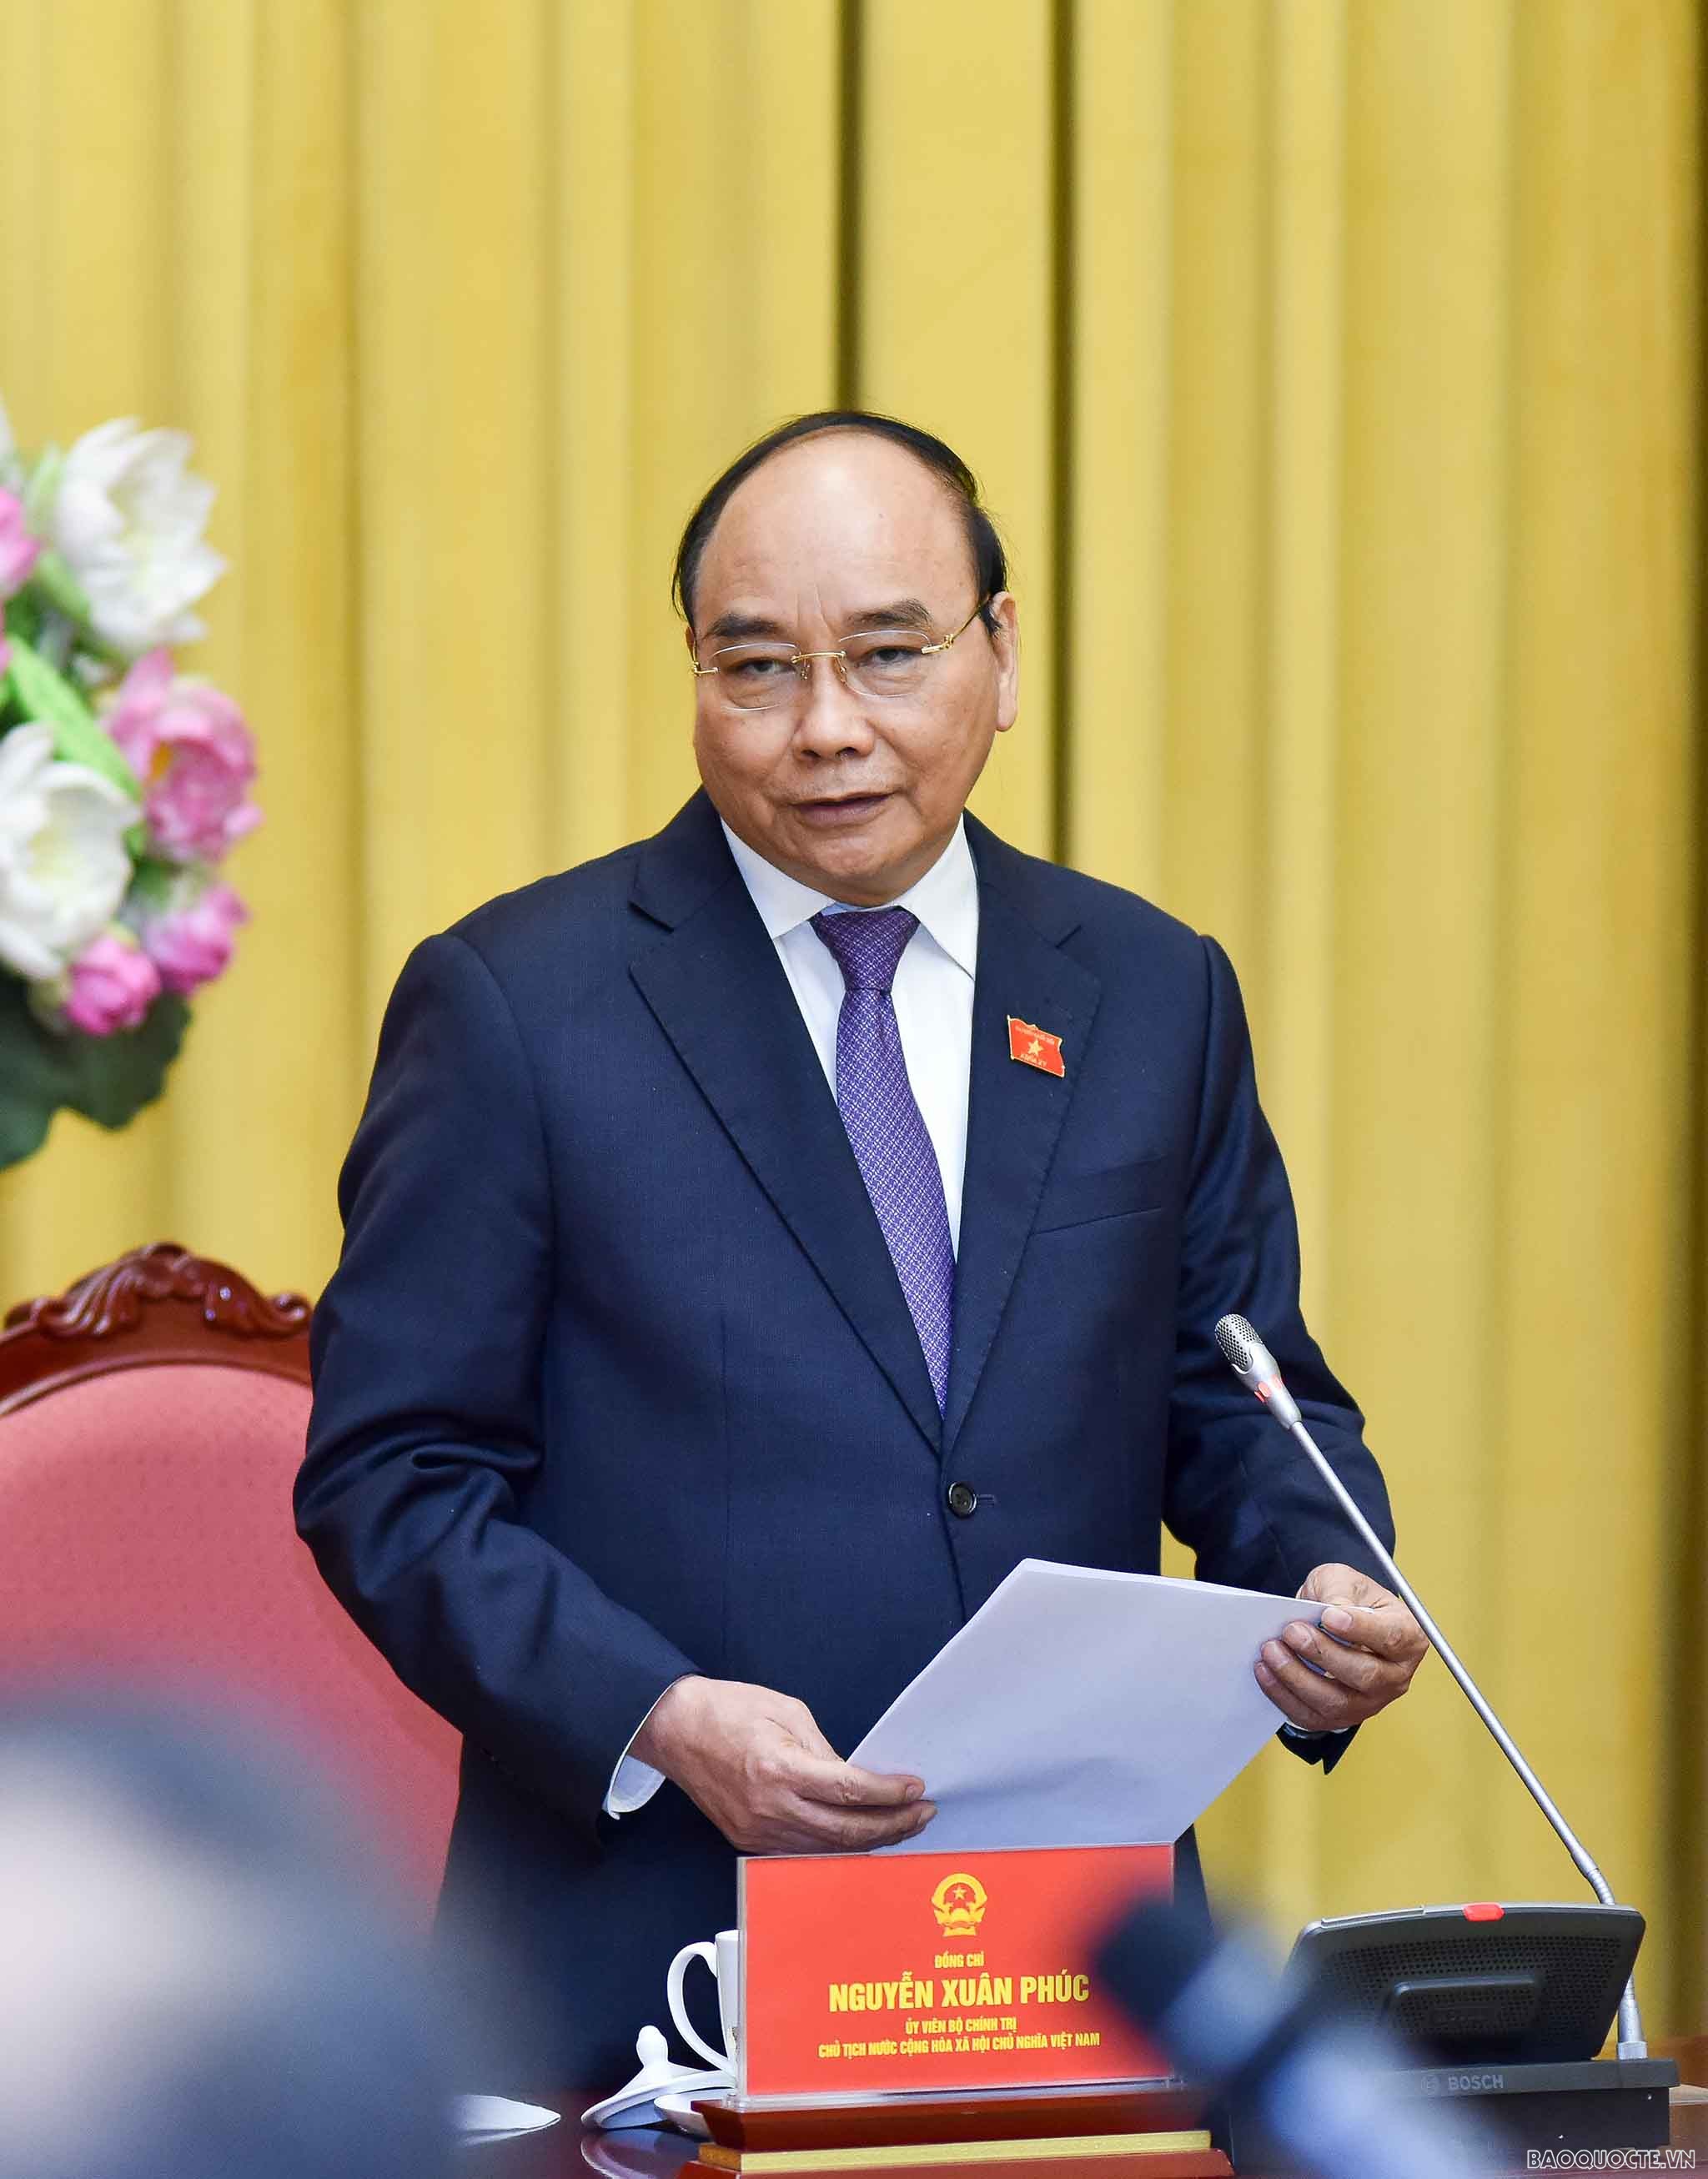 Chủ tịch nước Nguyễn Xuân Phúc giao nhiệm vụ cho 8 Đại sứ vừa mới được bổ nhiệm